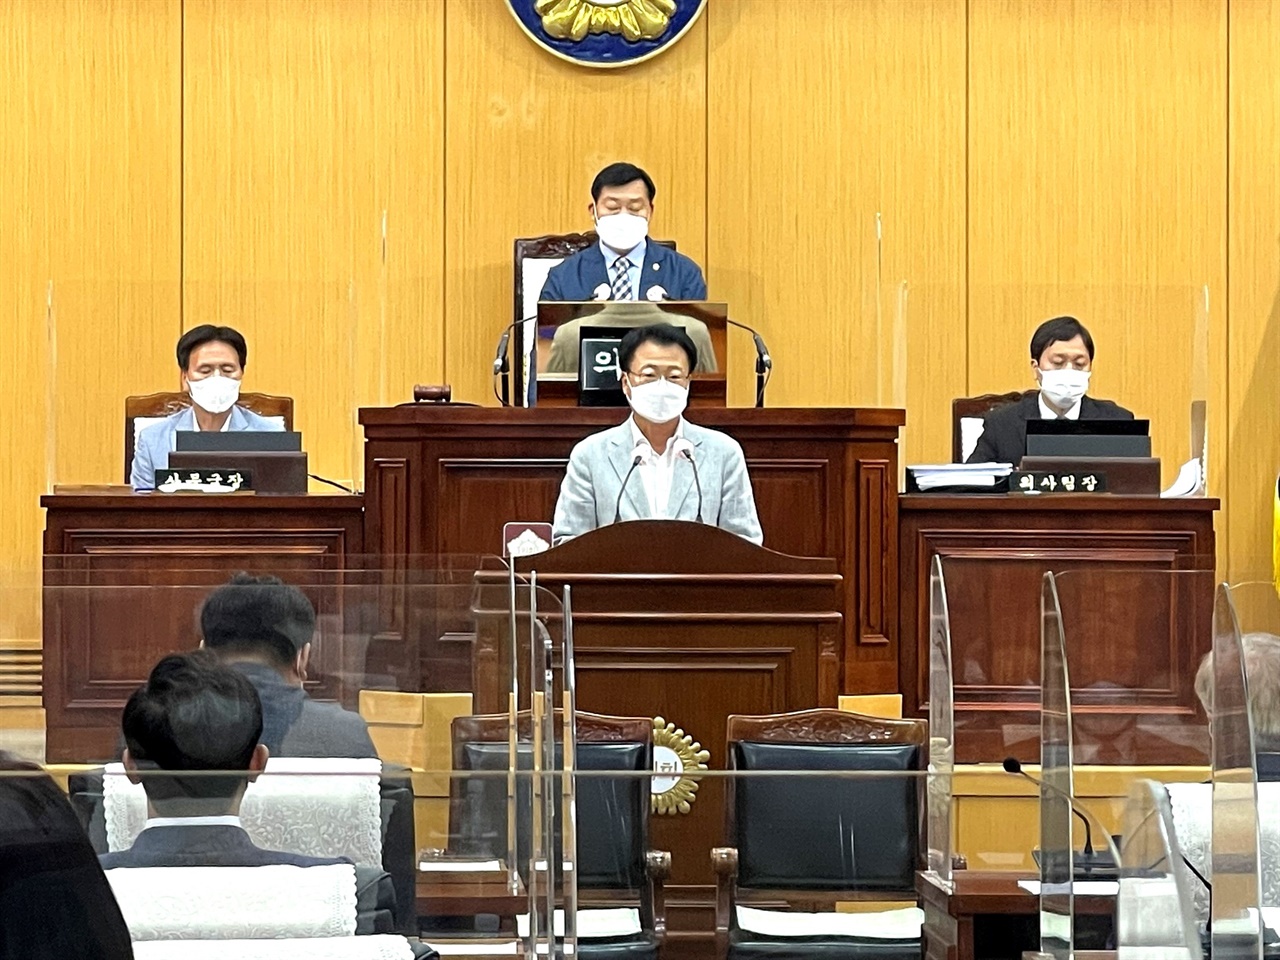 25일 의회운영위원장으로 선출된 김용경 시의원이 앞으로의 포부를 밝히고 있다.

